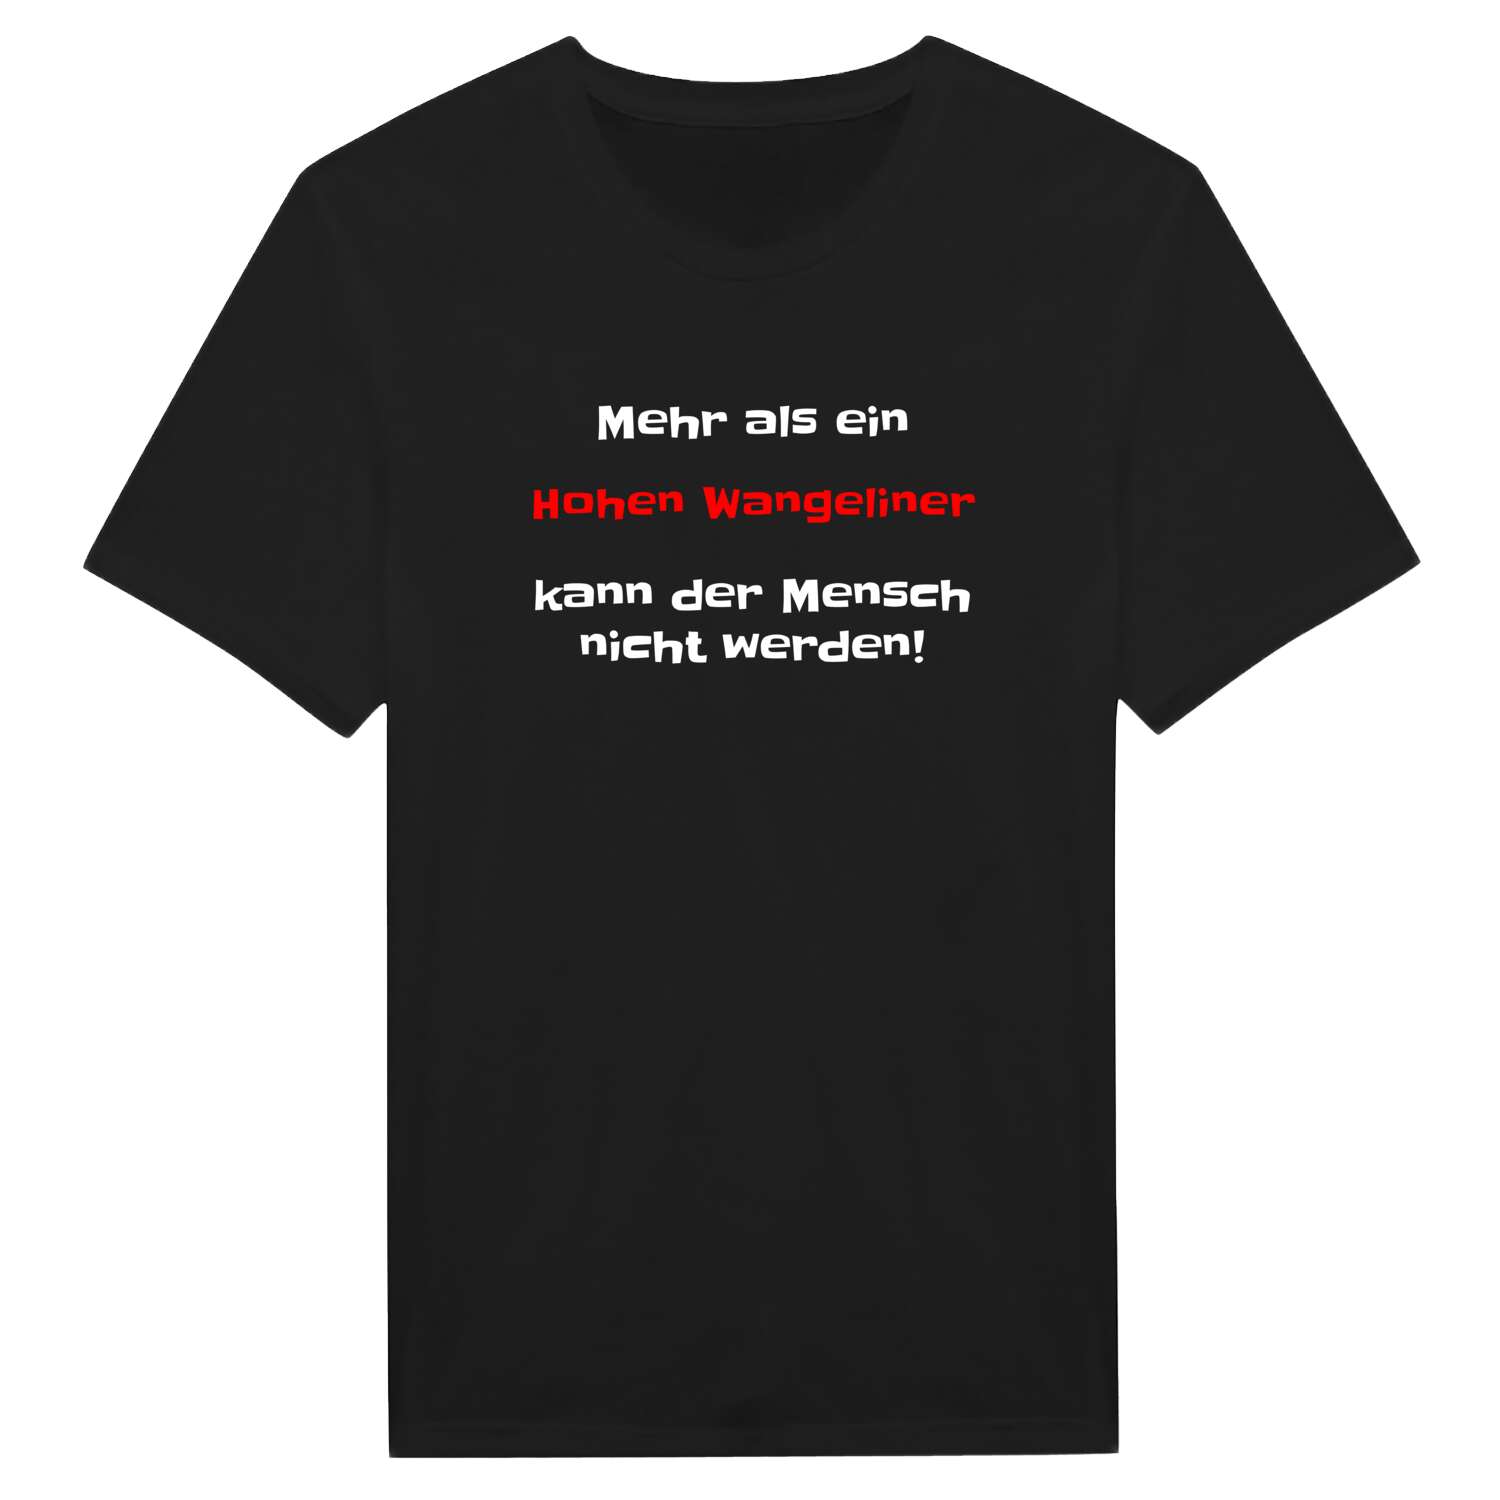 Hohen Wangelin T-Shirt »Mehr als ein«